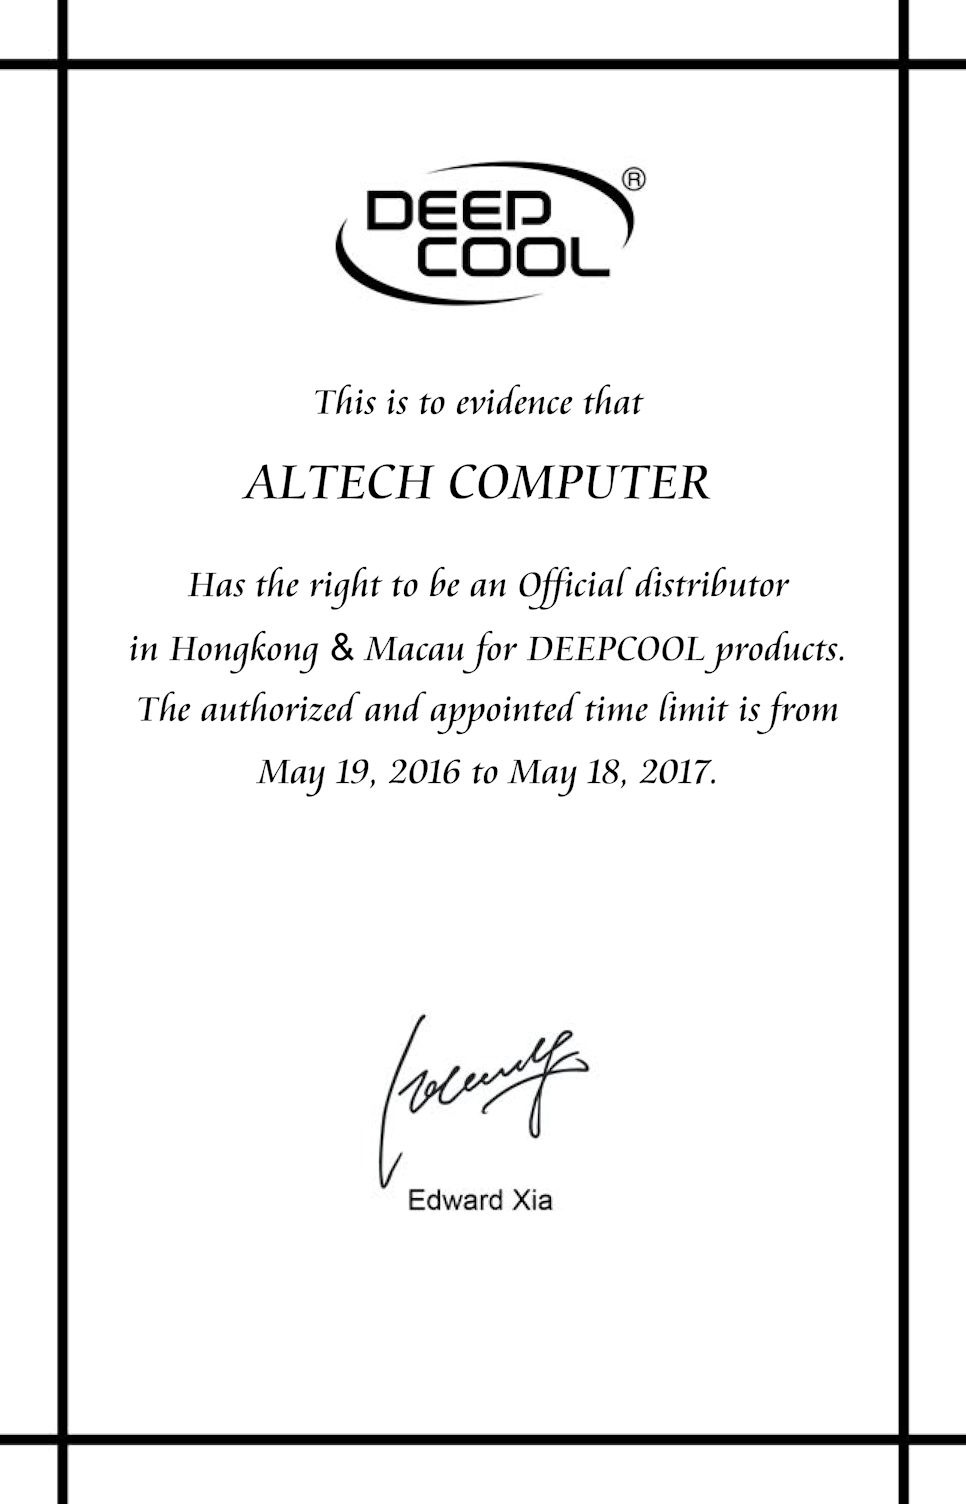 Altech - Deepcool Distributor